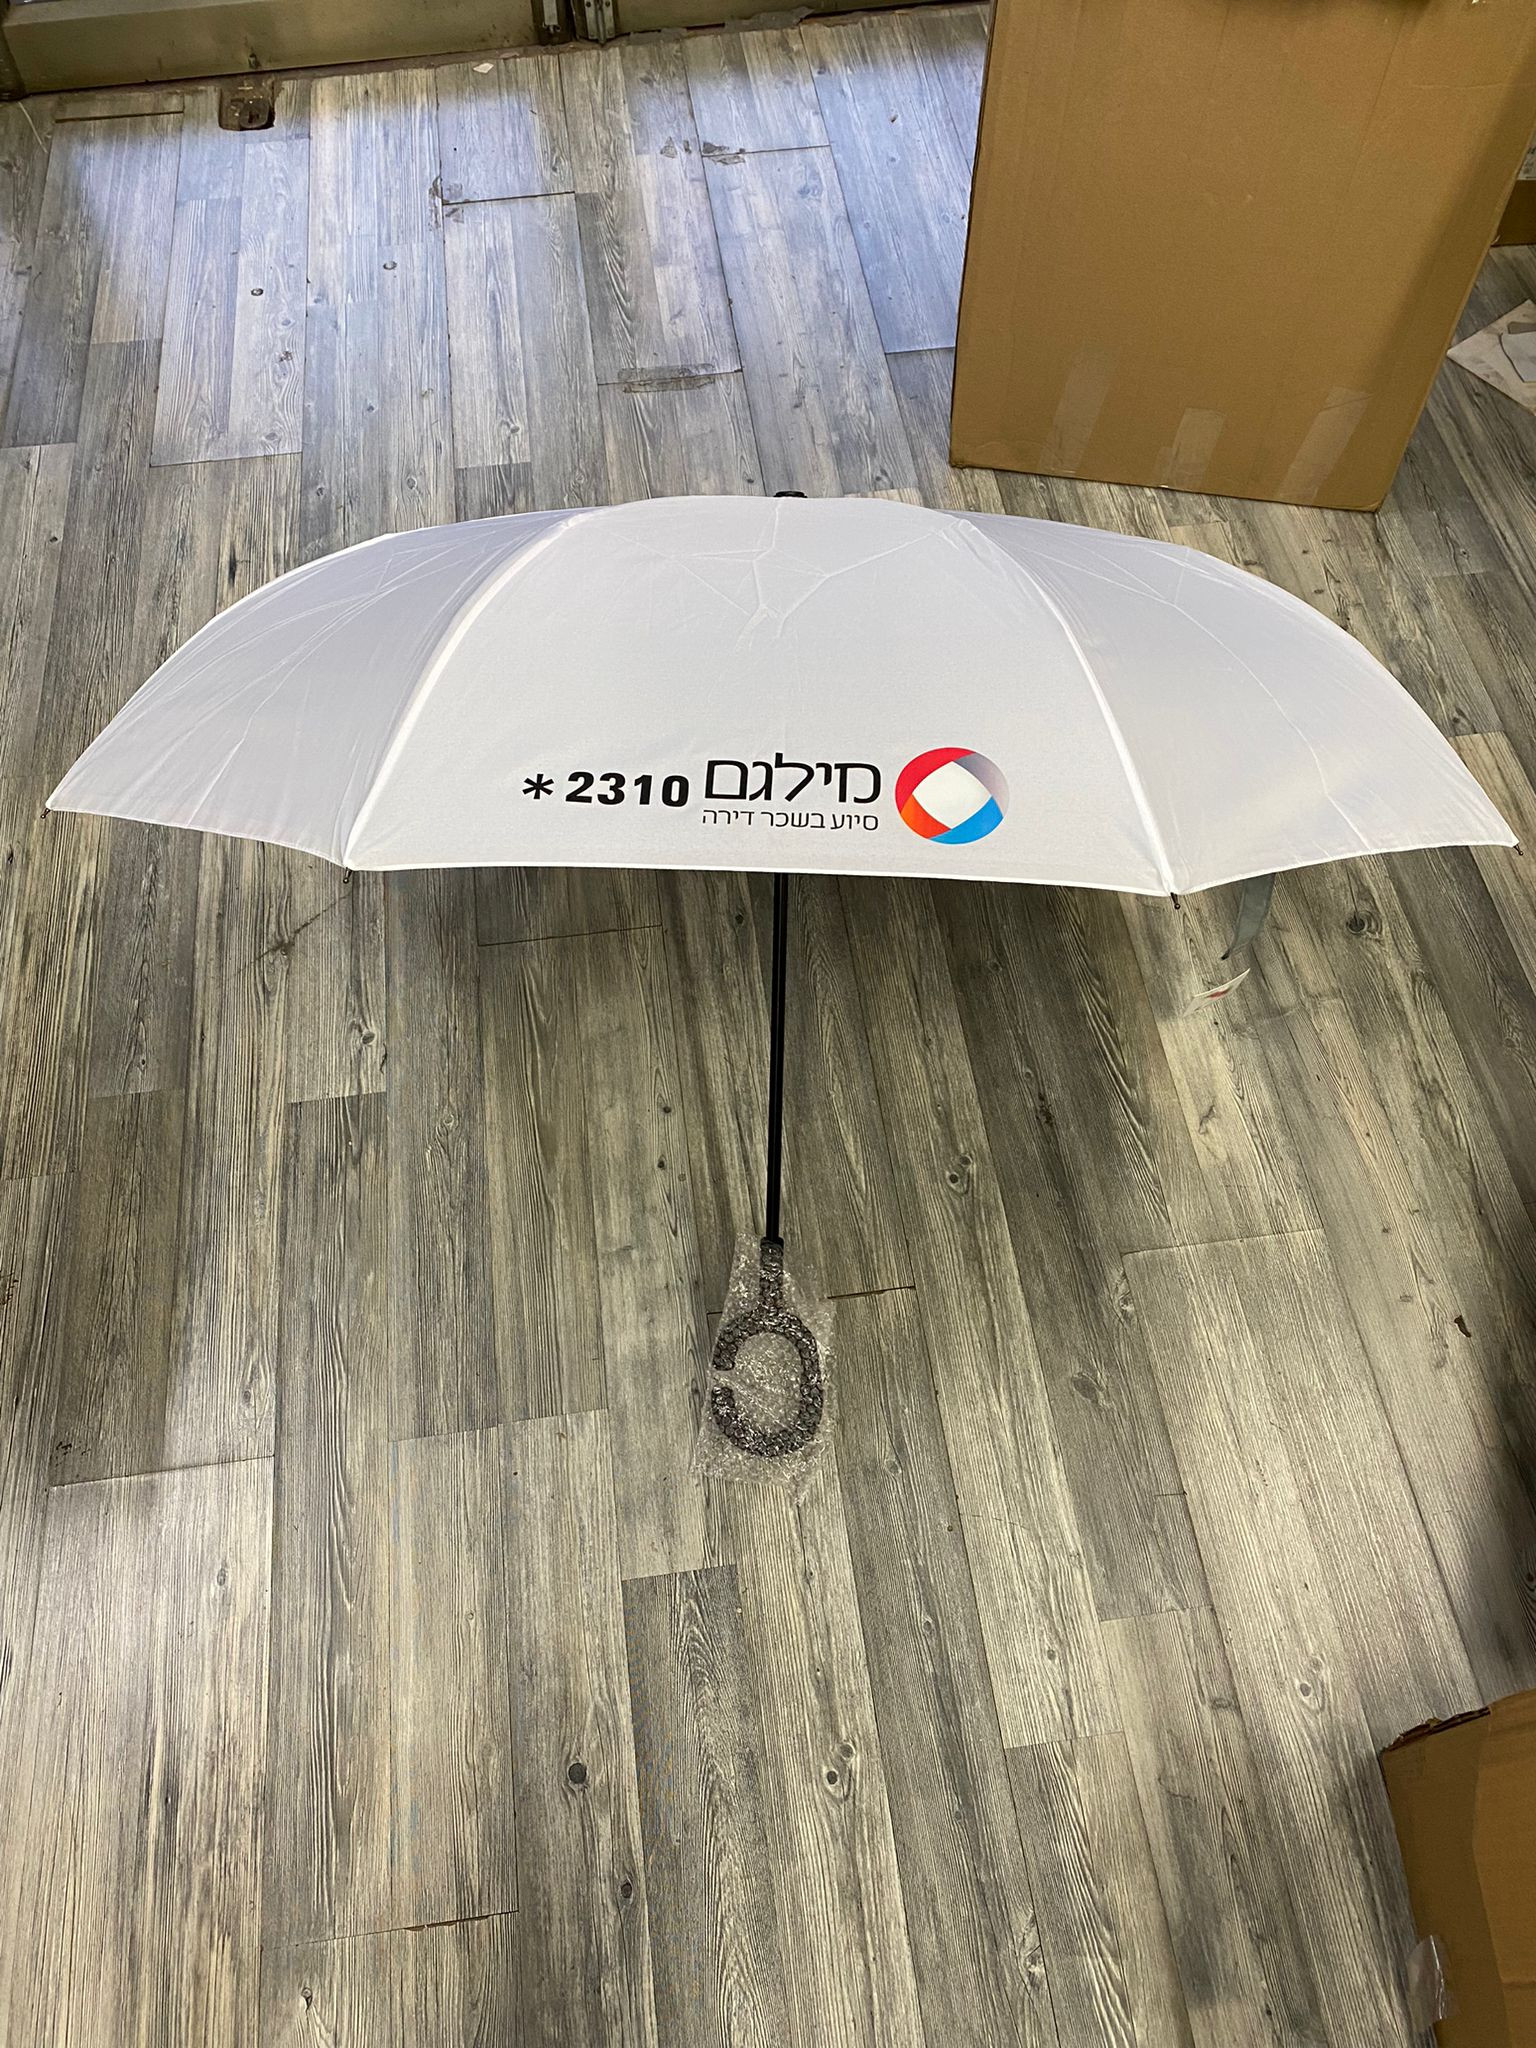 מטריה מתהפכת ממותגת עם הלוגו שלכם